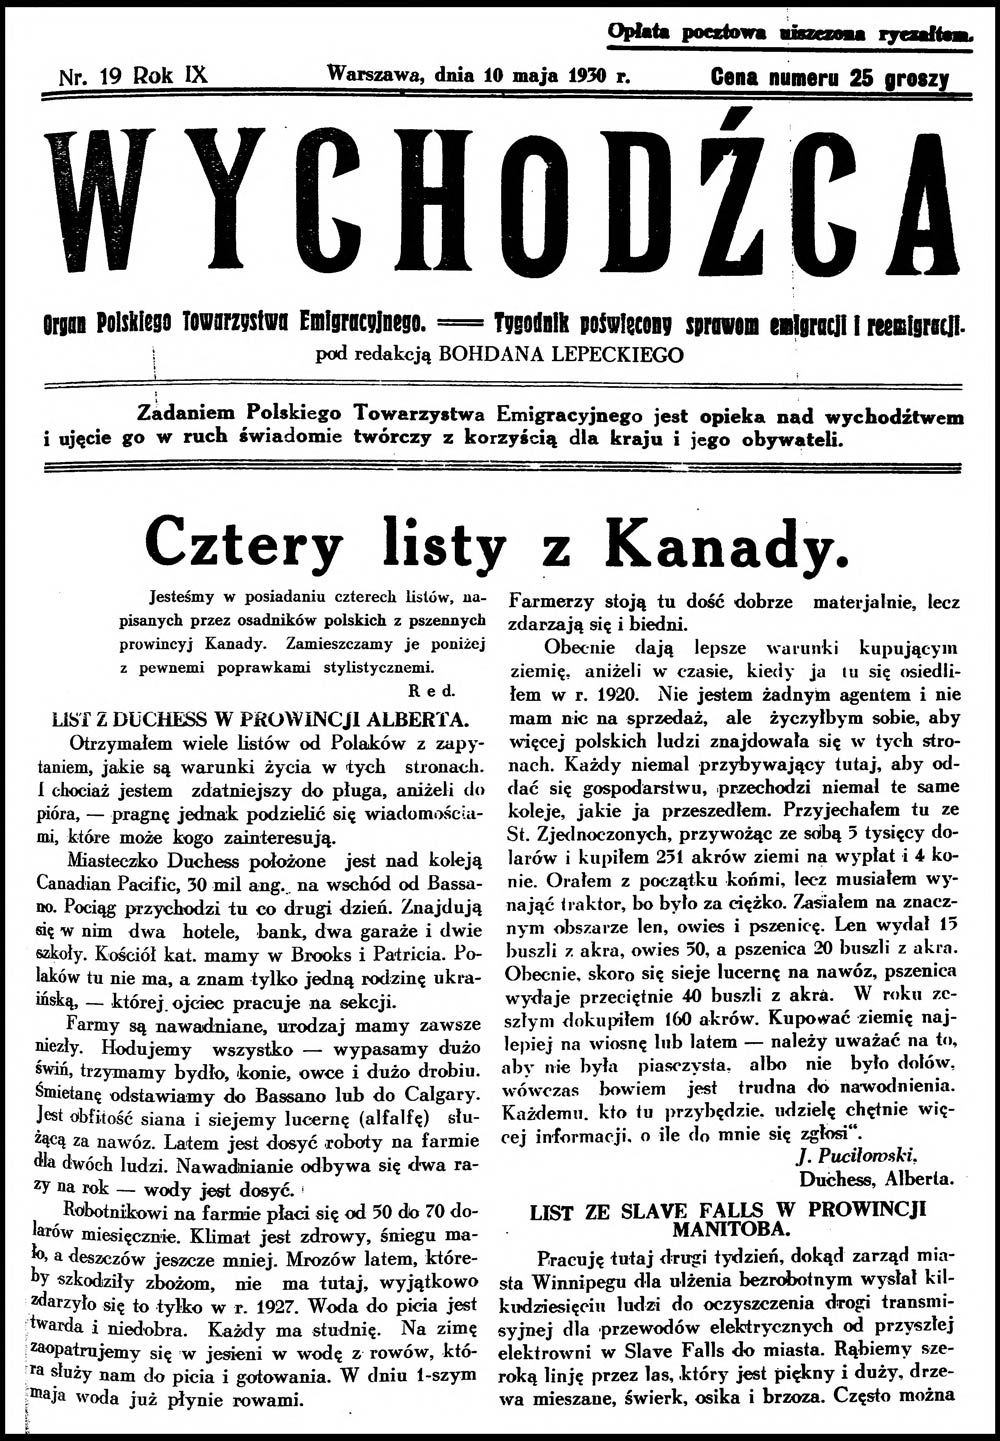 WYCHODŹCA. Organ Polskiego Towarzystwa Emigracyjnego == Tygodnik Poświęcony sprawom emigracji i reemigracji. - 1930, nr